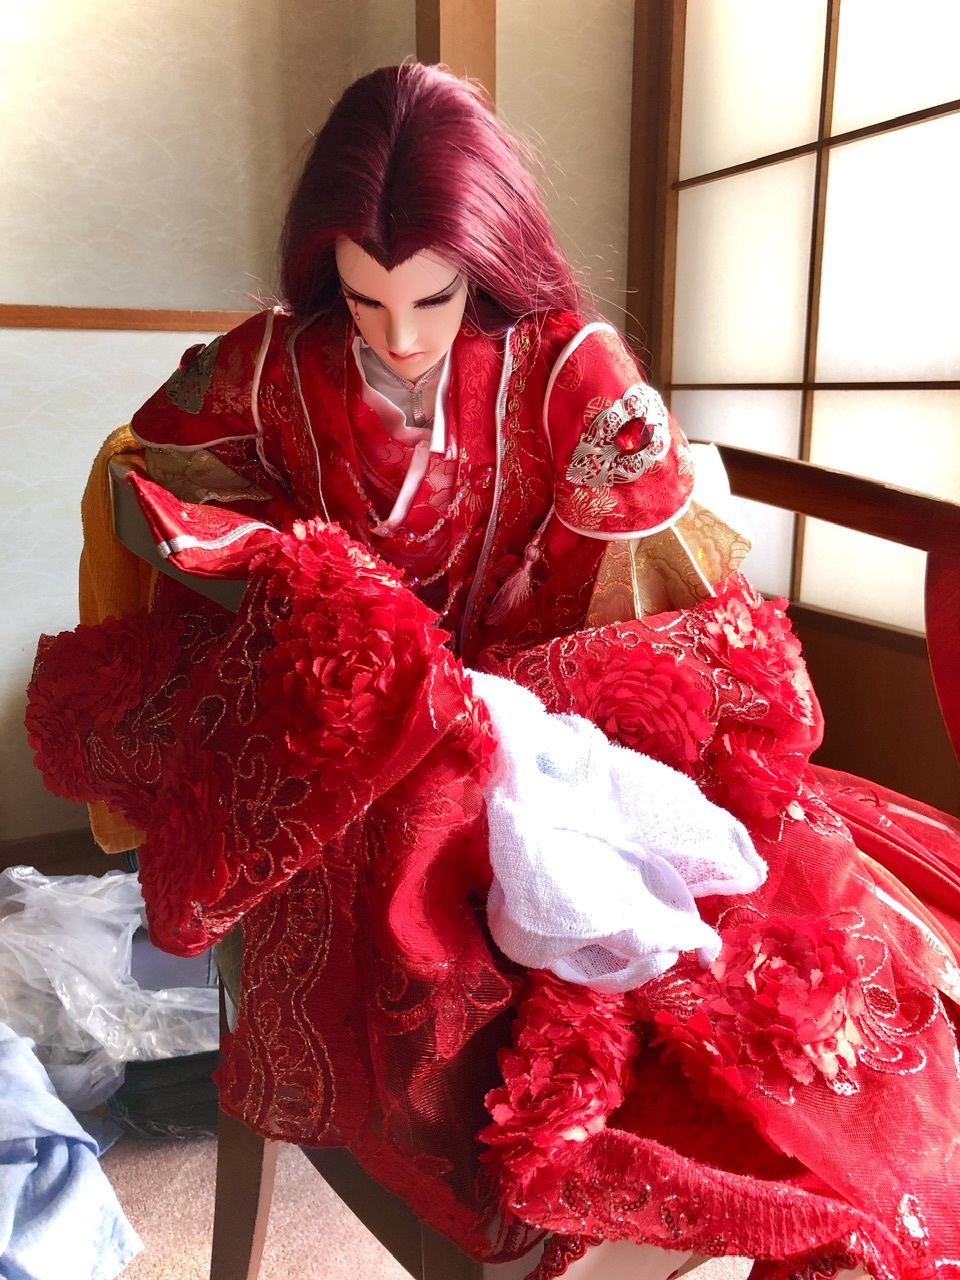 三夫人、初めてのお泊り、初めての日本の温泉、、続き_e0016517_17450643.jpeg